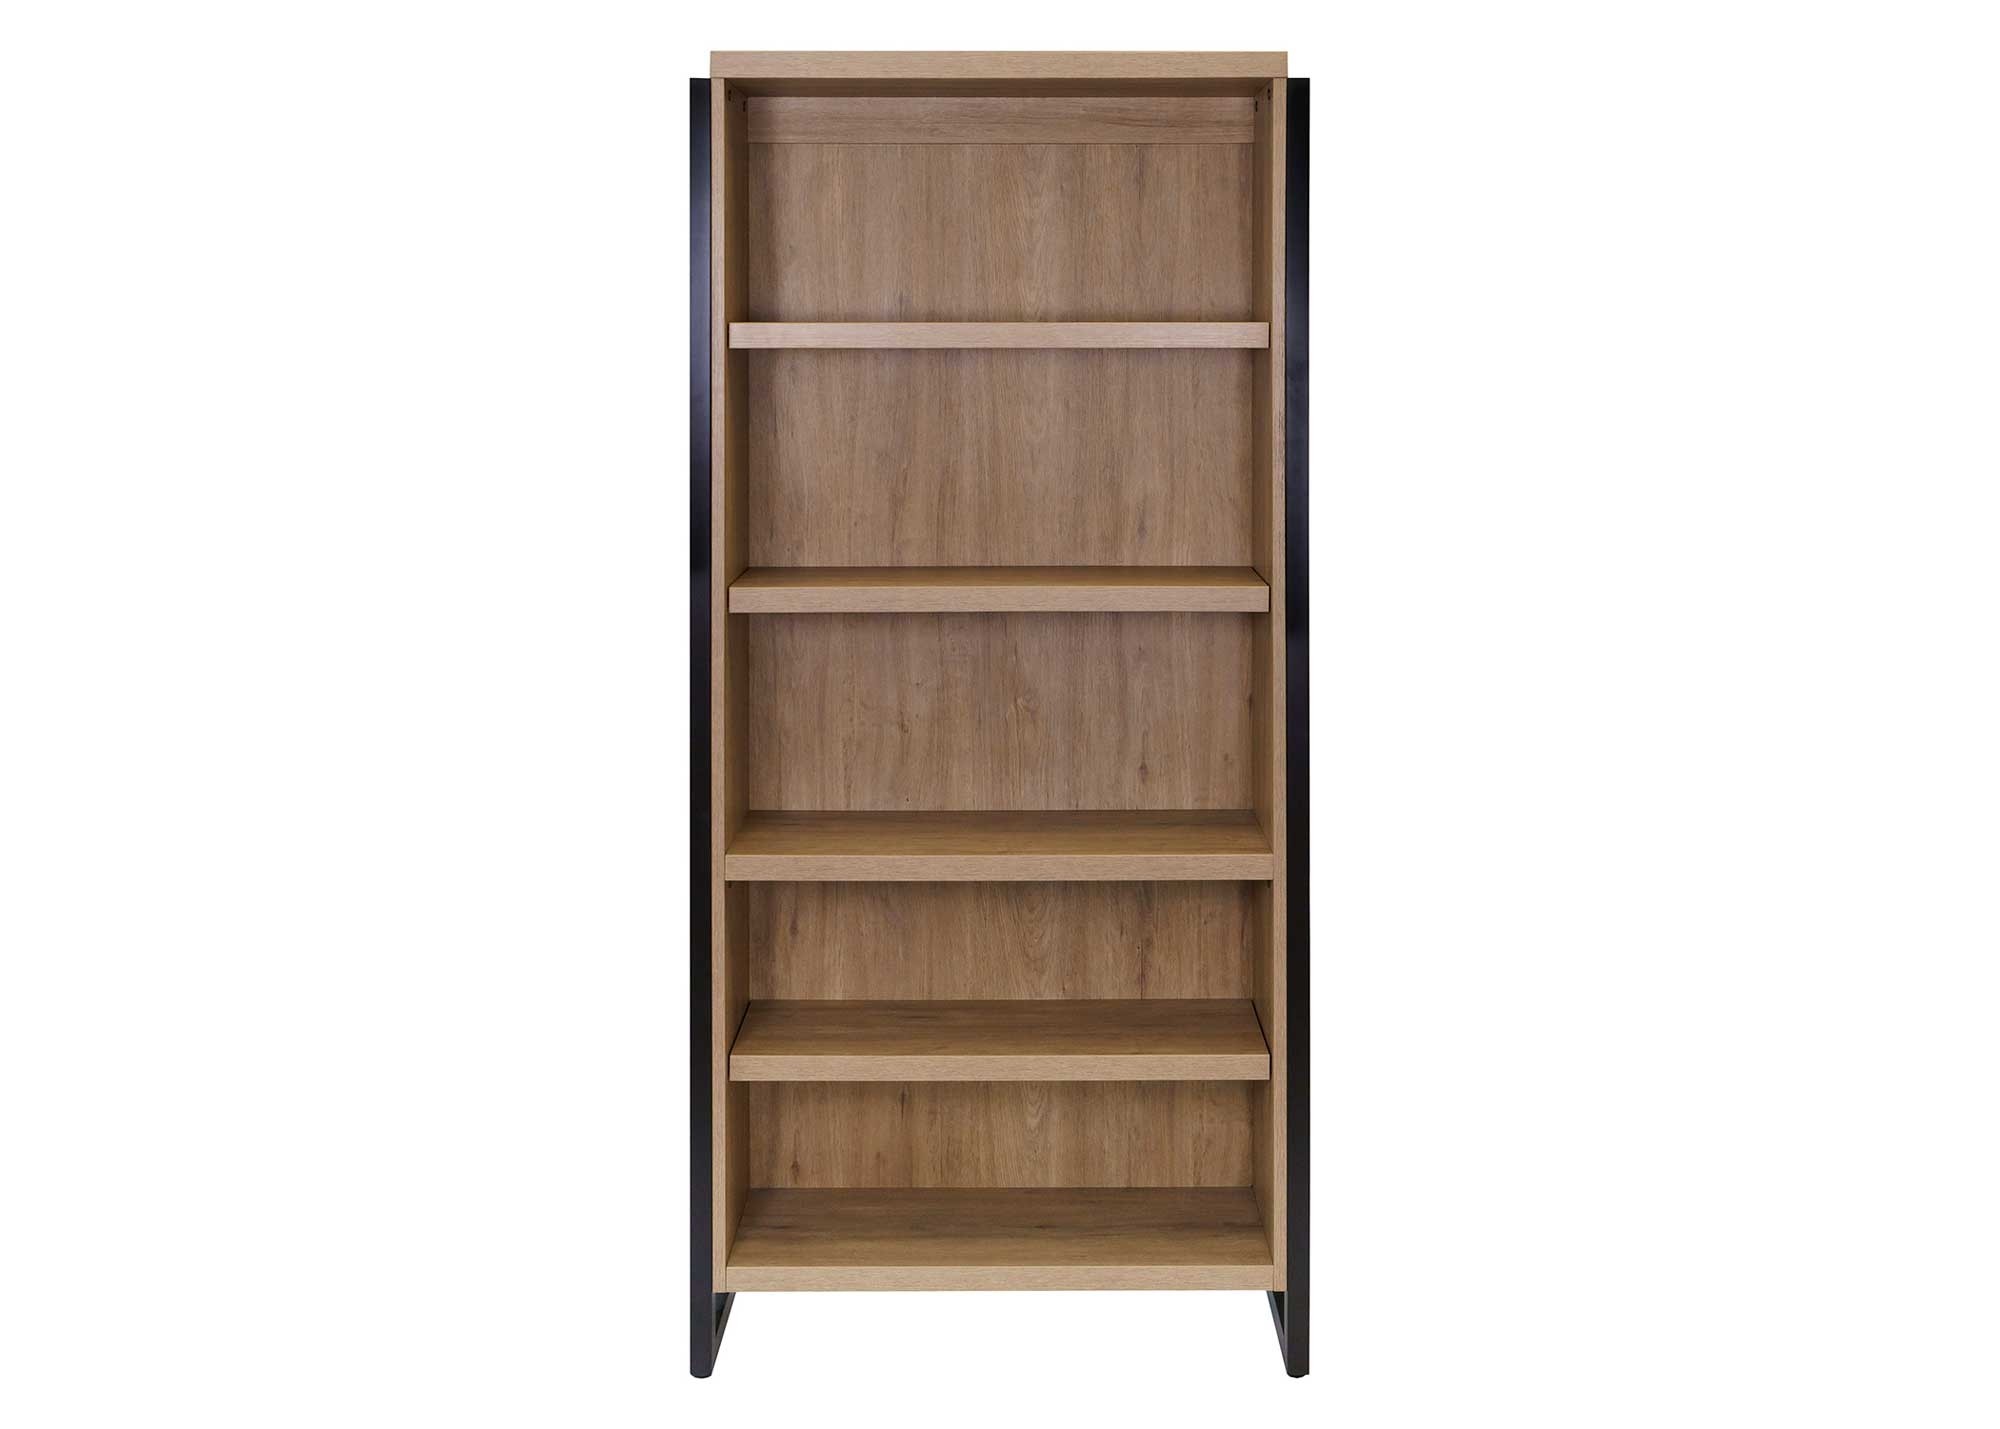 Mason Open Bookcase by Martin Furniture, Monarca